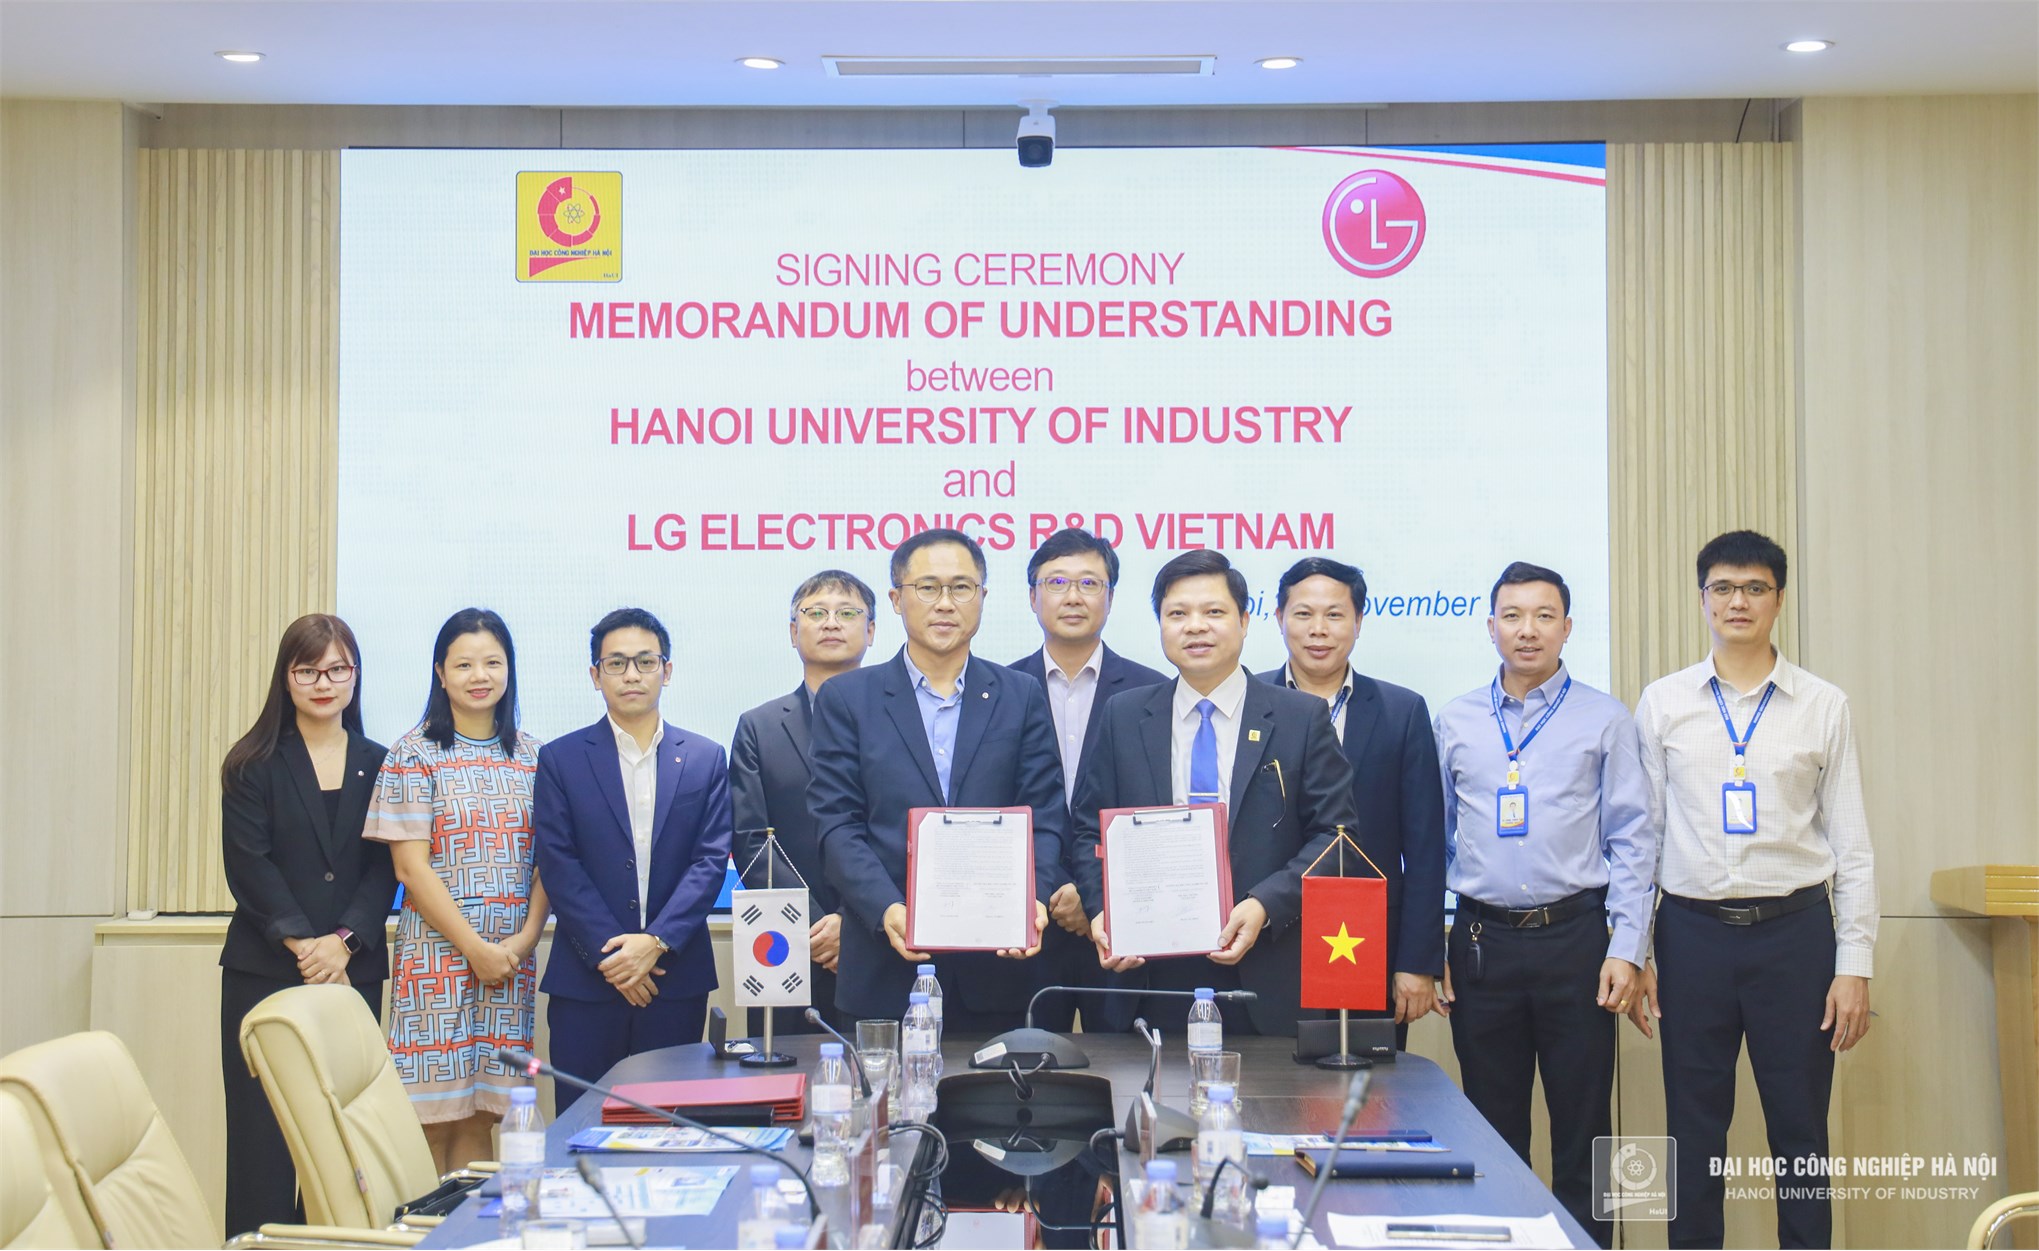 Ký kết Thỏa thuận hợp tác với Công ty TNHH LG Electronics Development Việt Nam và Công ty TNHH LG CNS Việt Nam